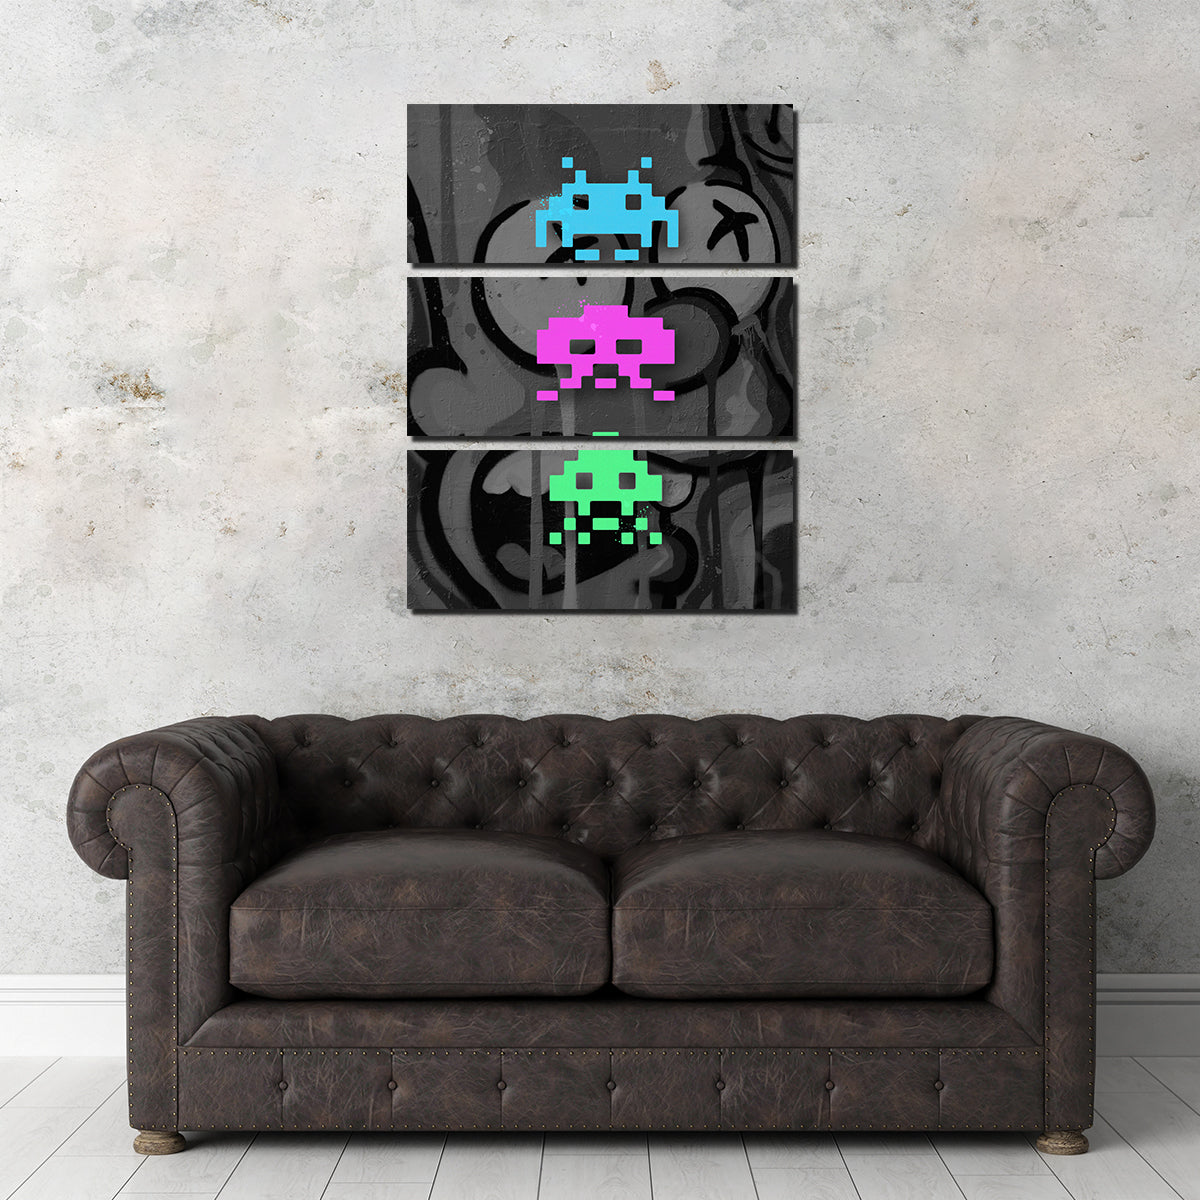 3 Space Invaders Graffiti